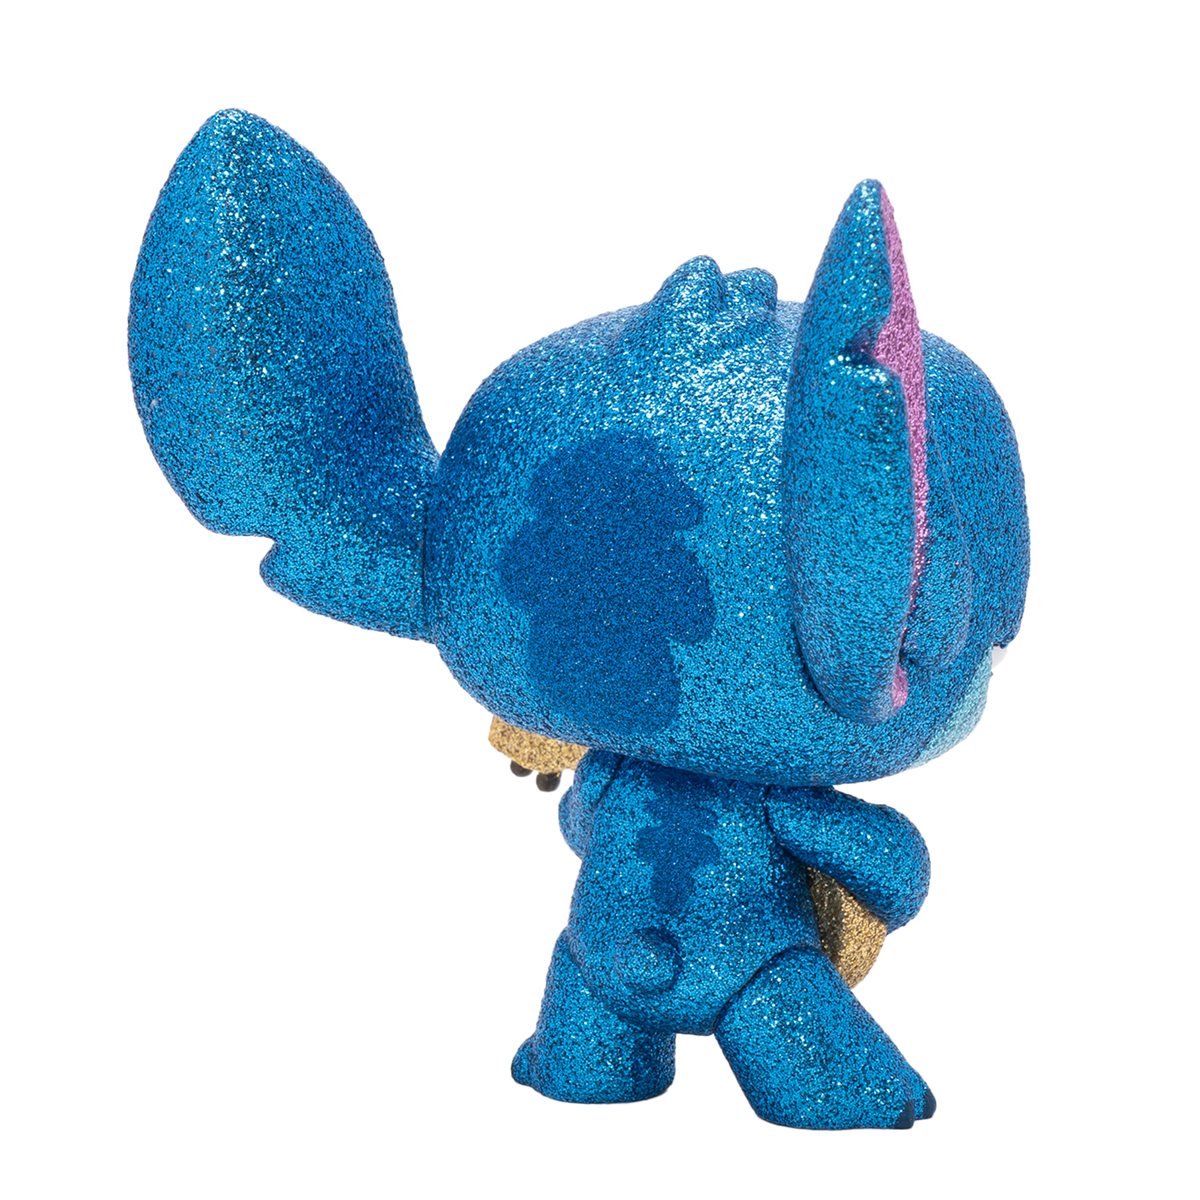 Stitch Ukulele POP Figure Lilo & Stitch –